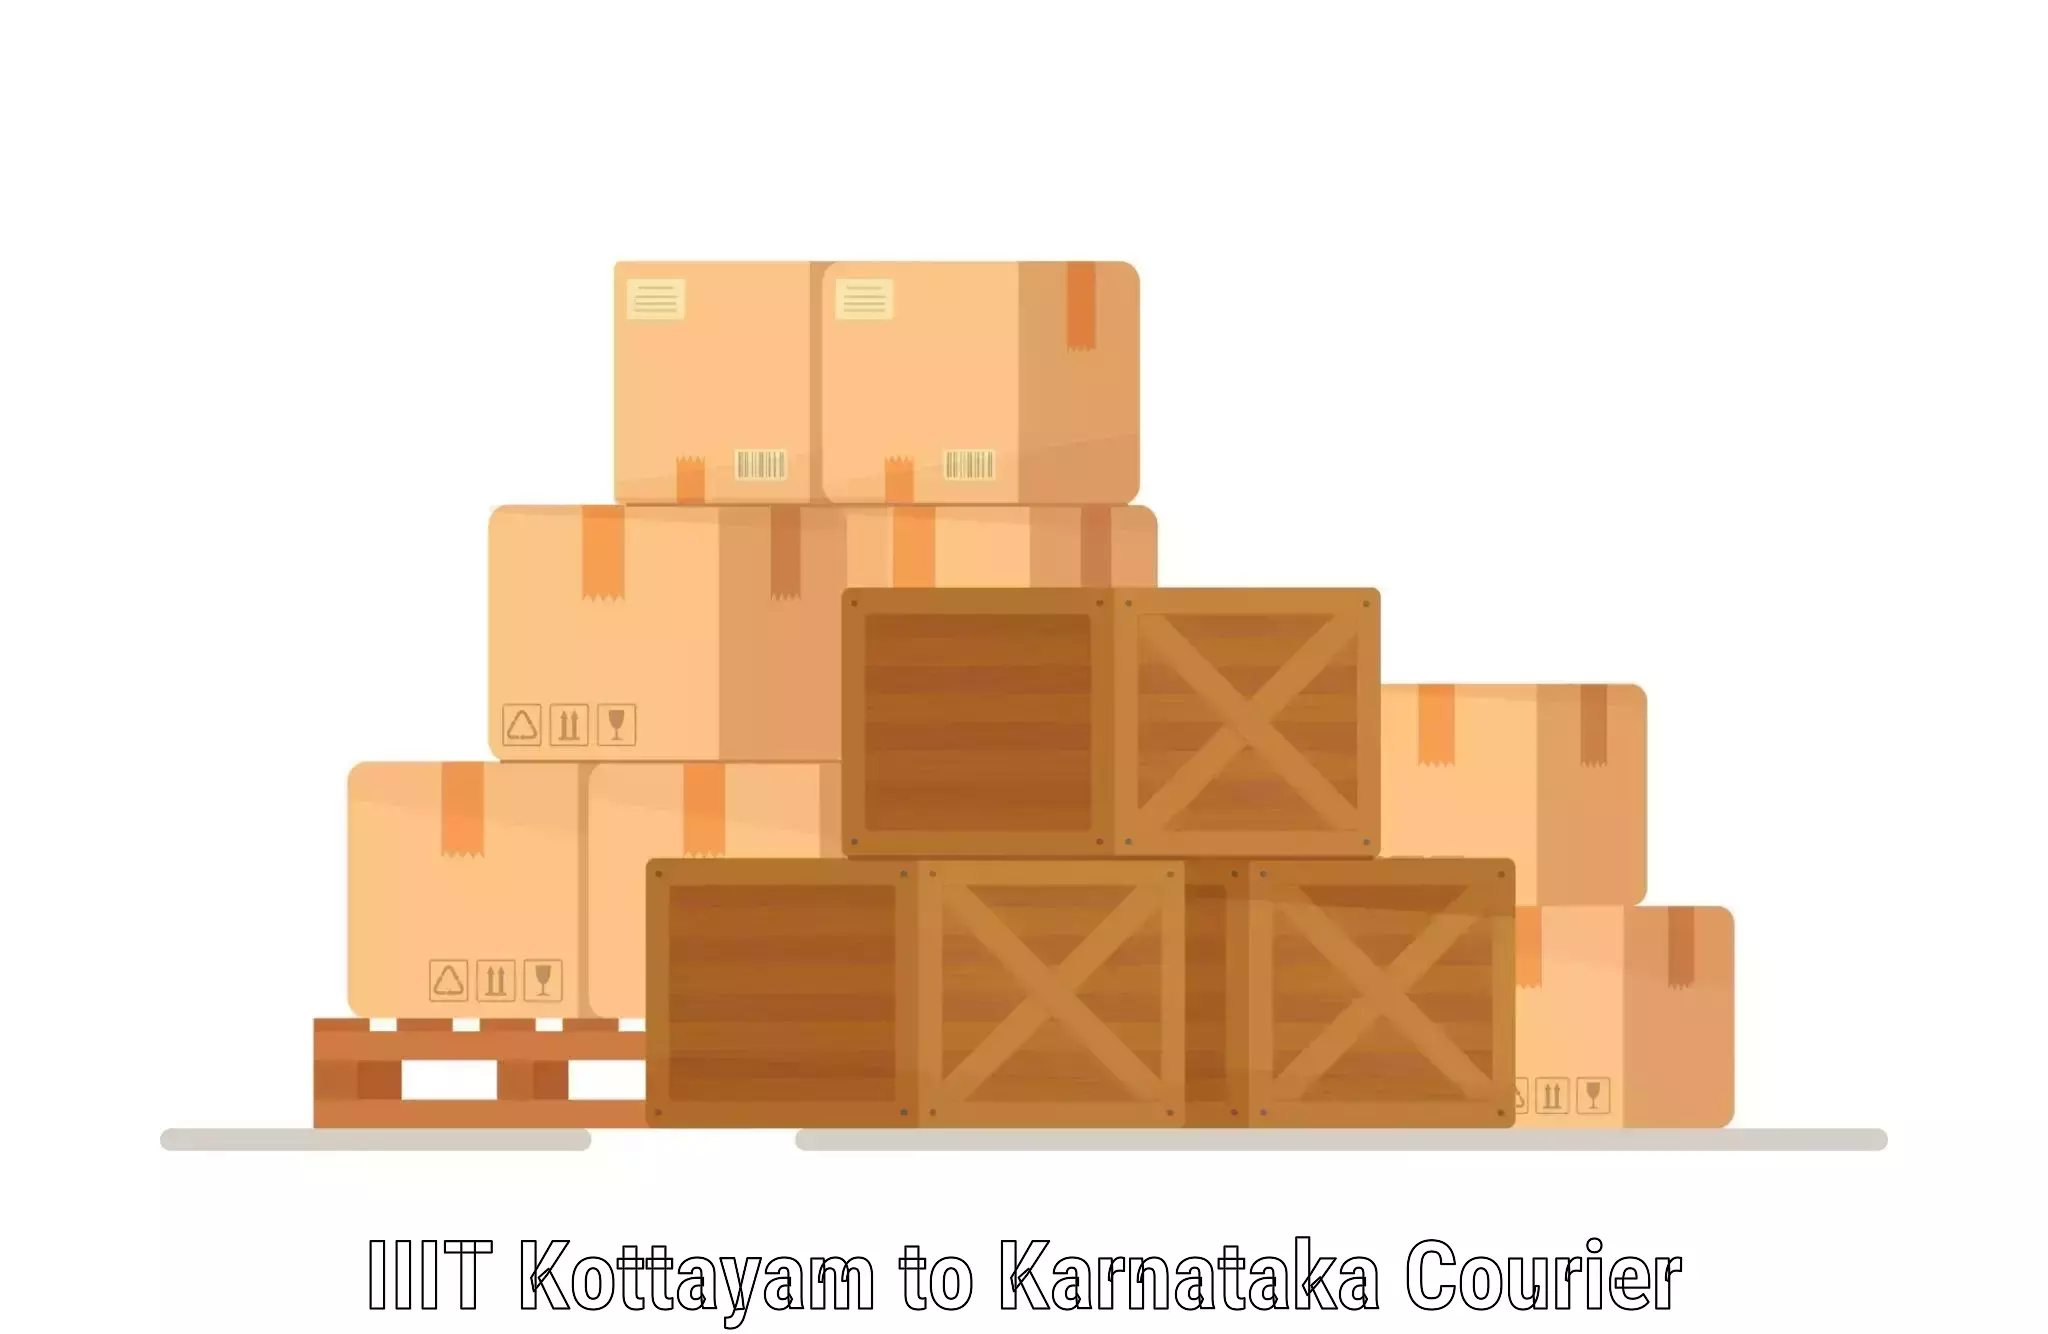 Door-to-door freight service IIIT Kottayam to Karnataka